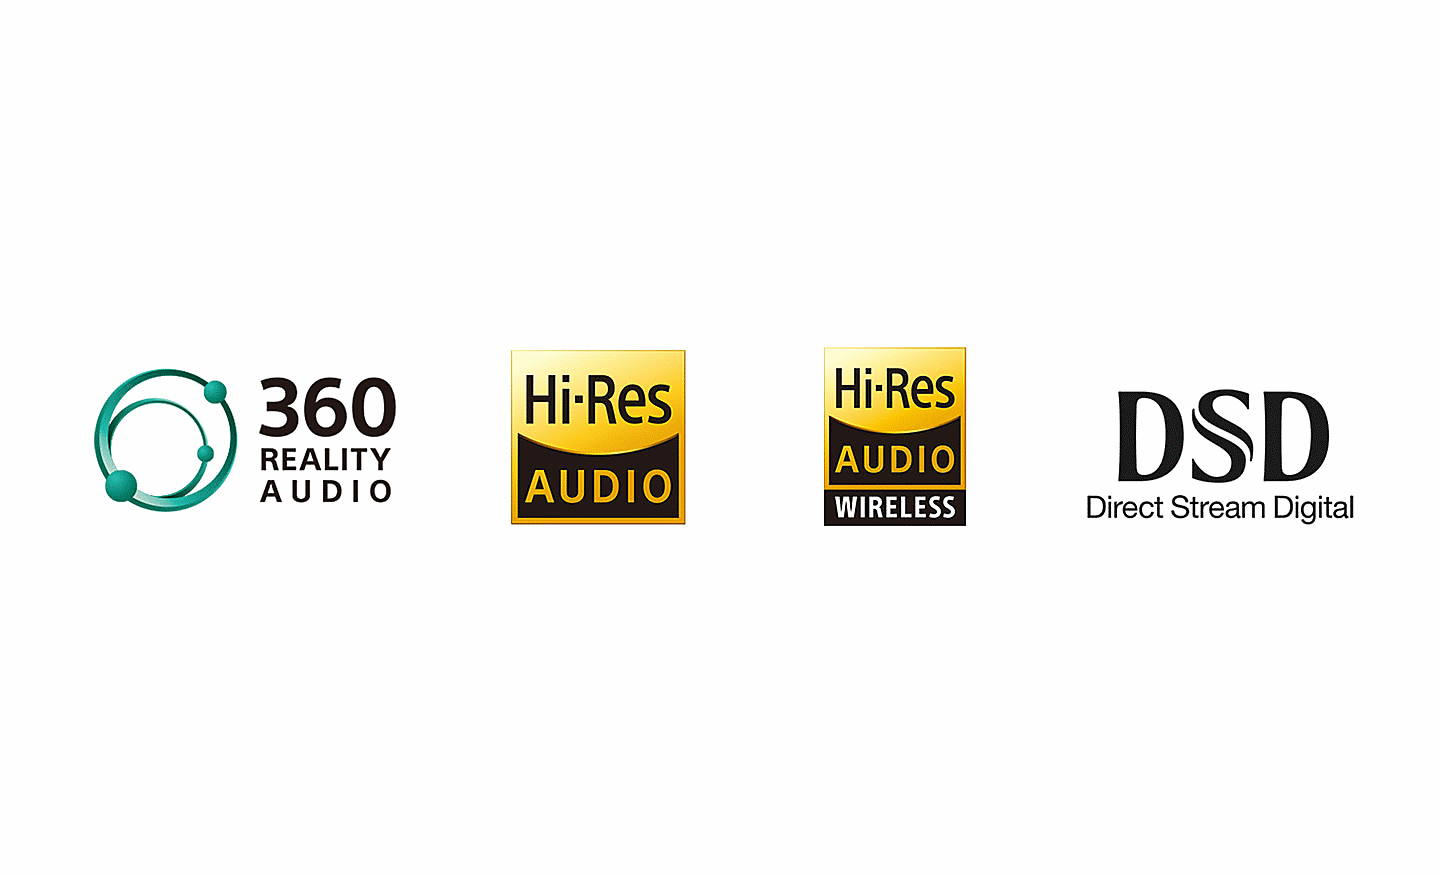 Logo technológie 360 Reality Audio, logo zvuku vo vysokom rozlíšení, logo bezdrôtového zvuku vo vysokom rozlíšení, logo technológie DSD Direct Stream Digital